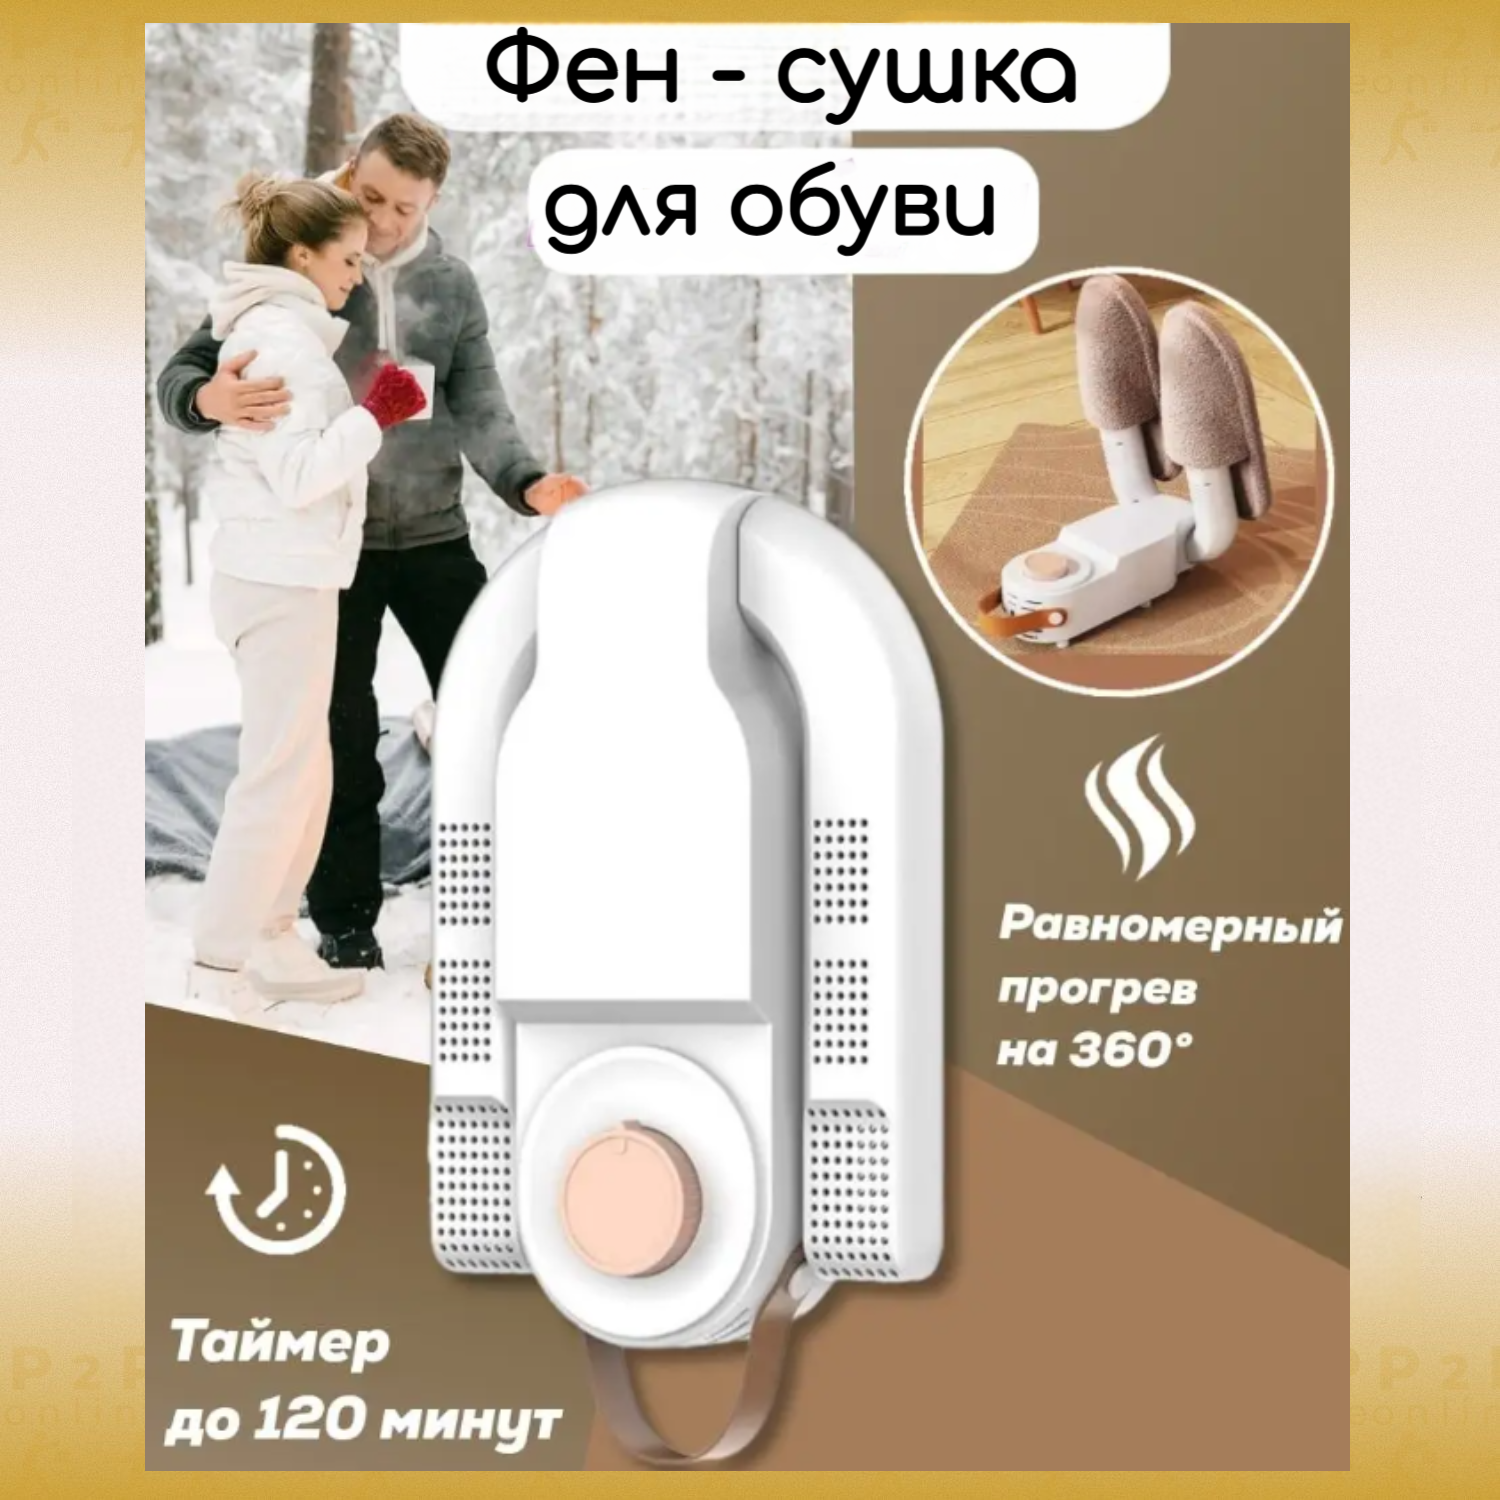 Переносная электрическая антибактериальная сушилка с УФ для обуви варежек перчаток шапок и т. д. с обдувом. Сушка одежды и обуви с таймером 120 мин